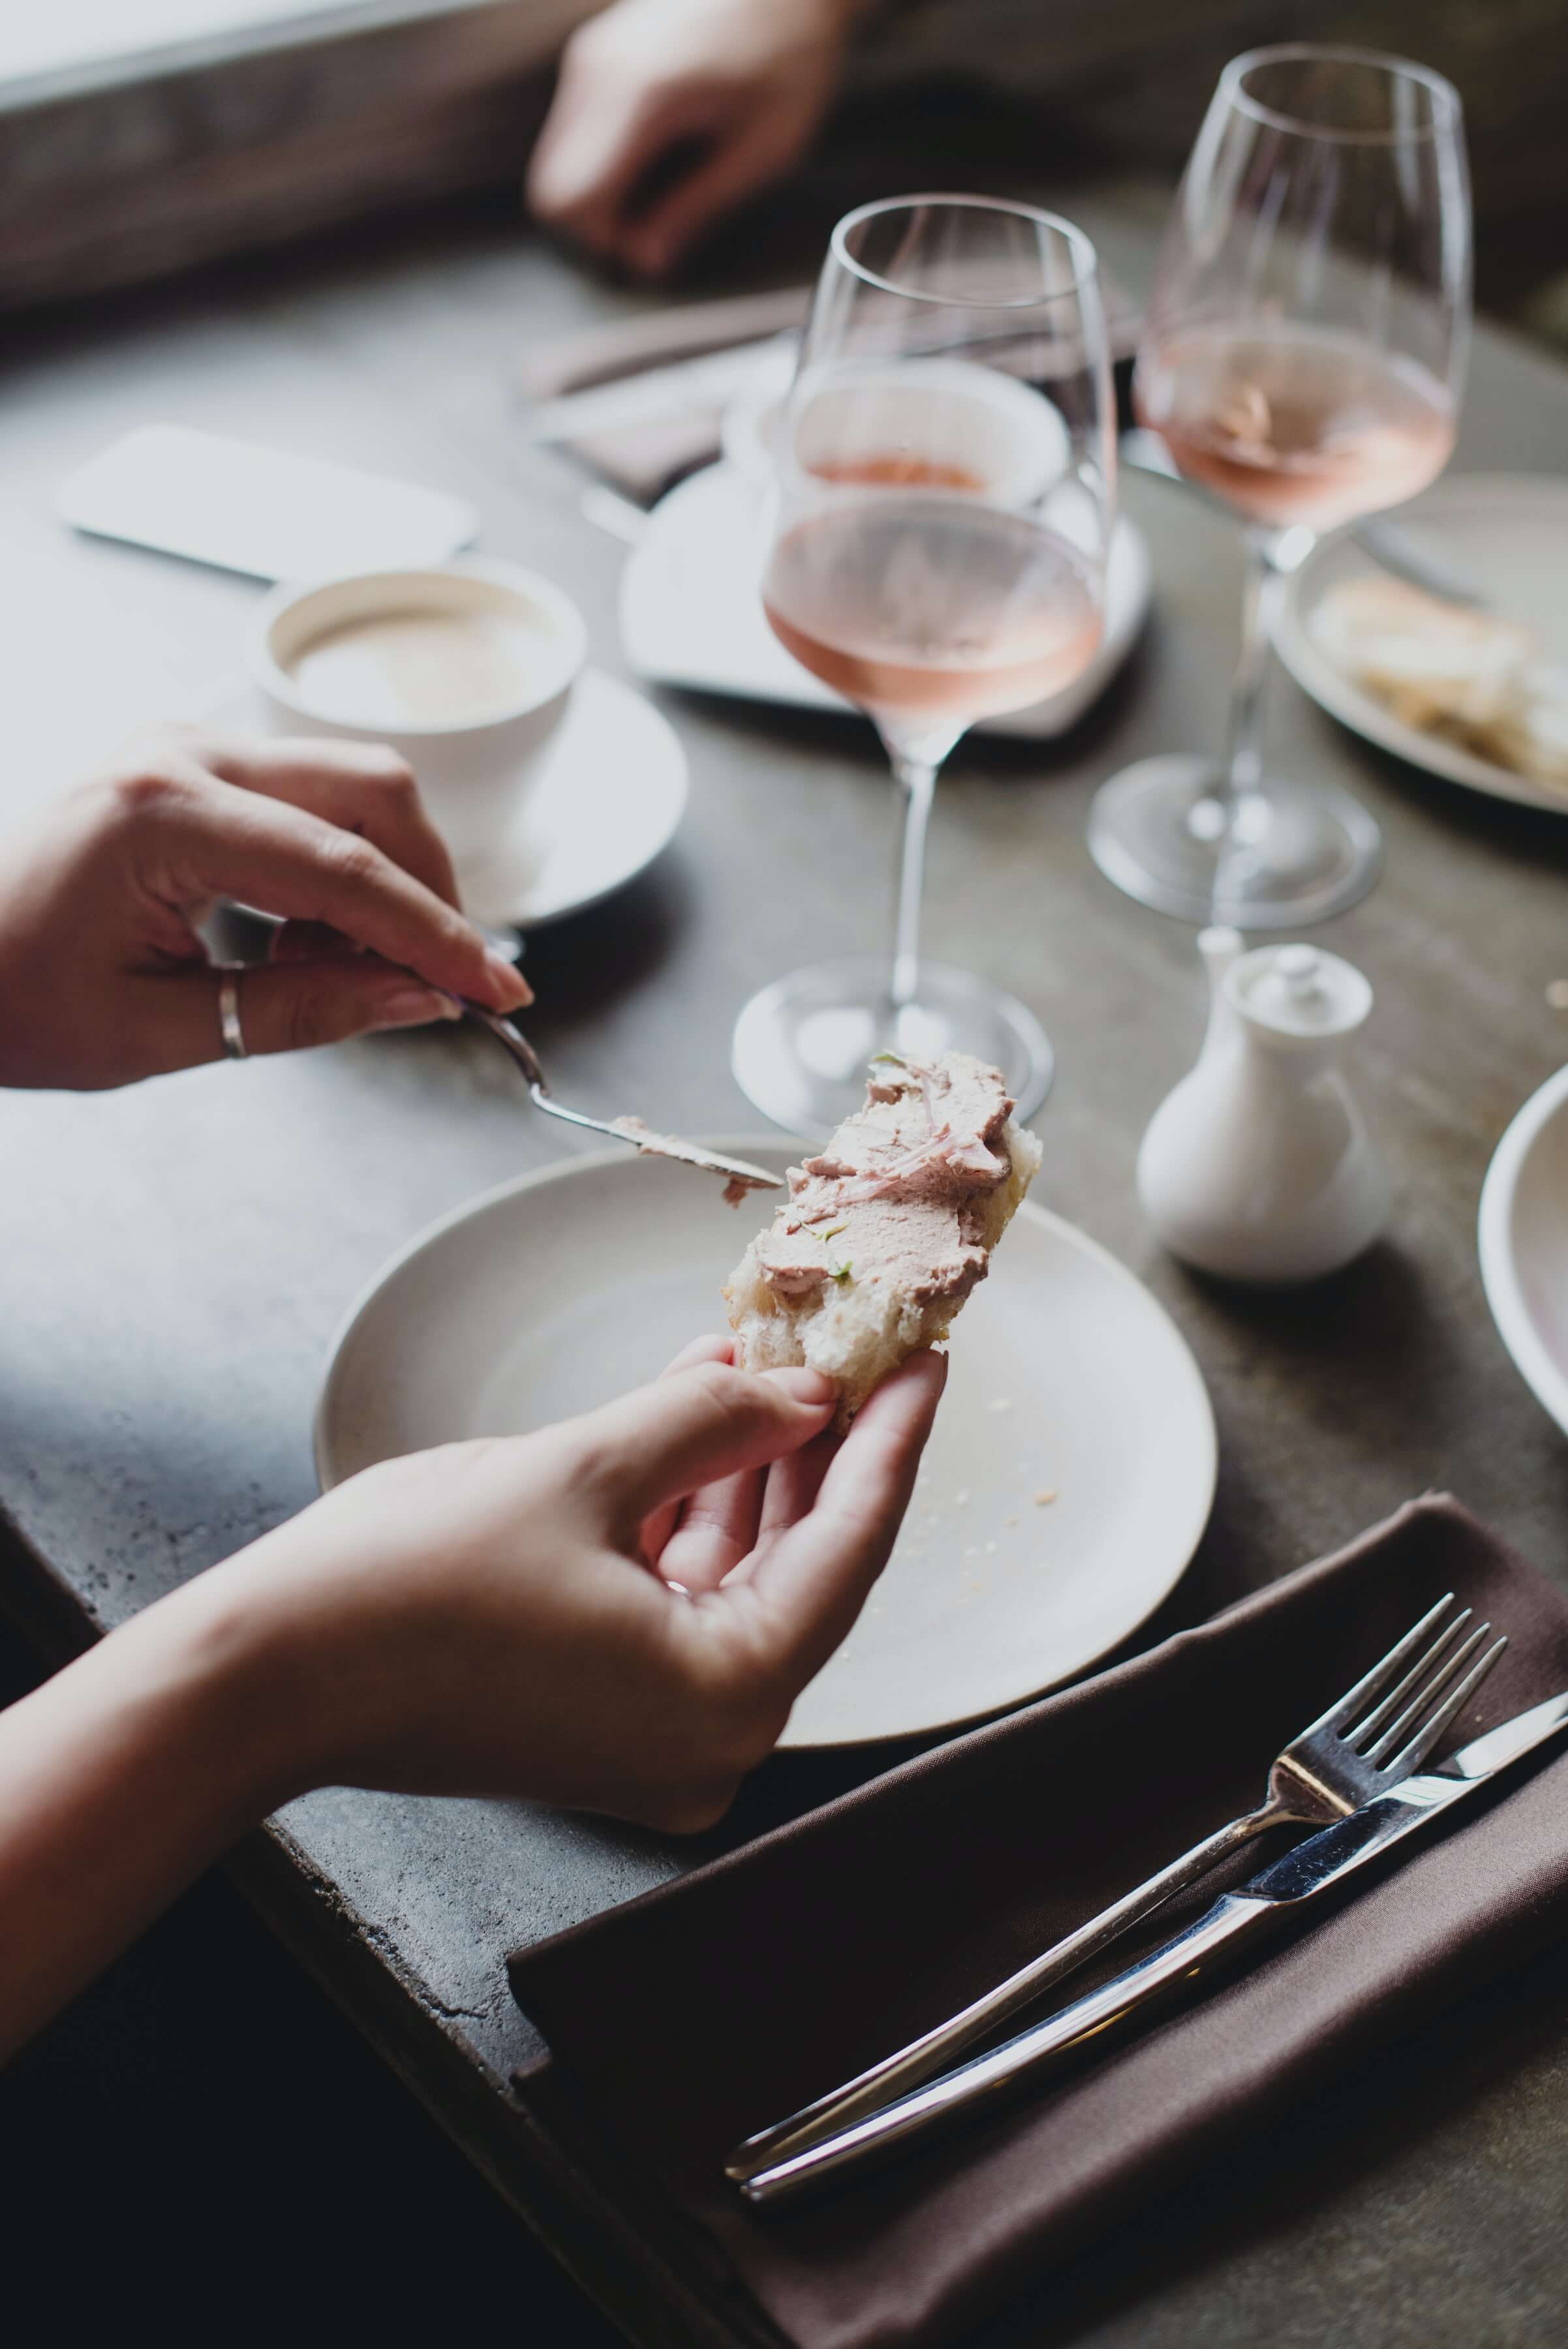 Pate gan ngỗng hay "Foie Gras" vốn chỉ được phục vụ tại các nhà hàng và khách sạn sang trọng bậc nhất